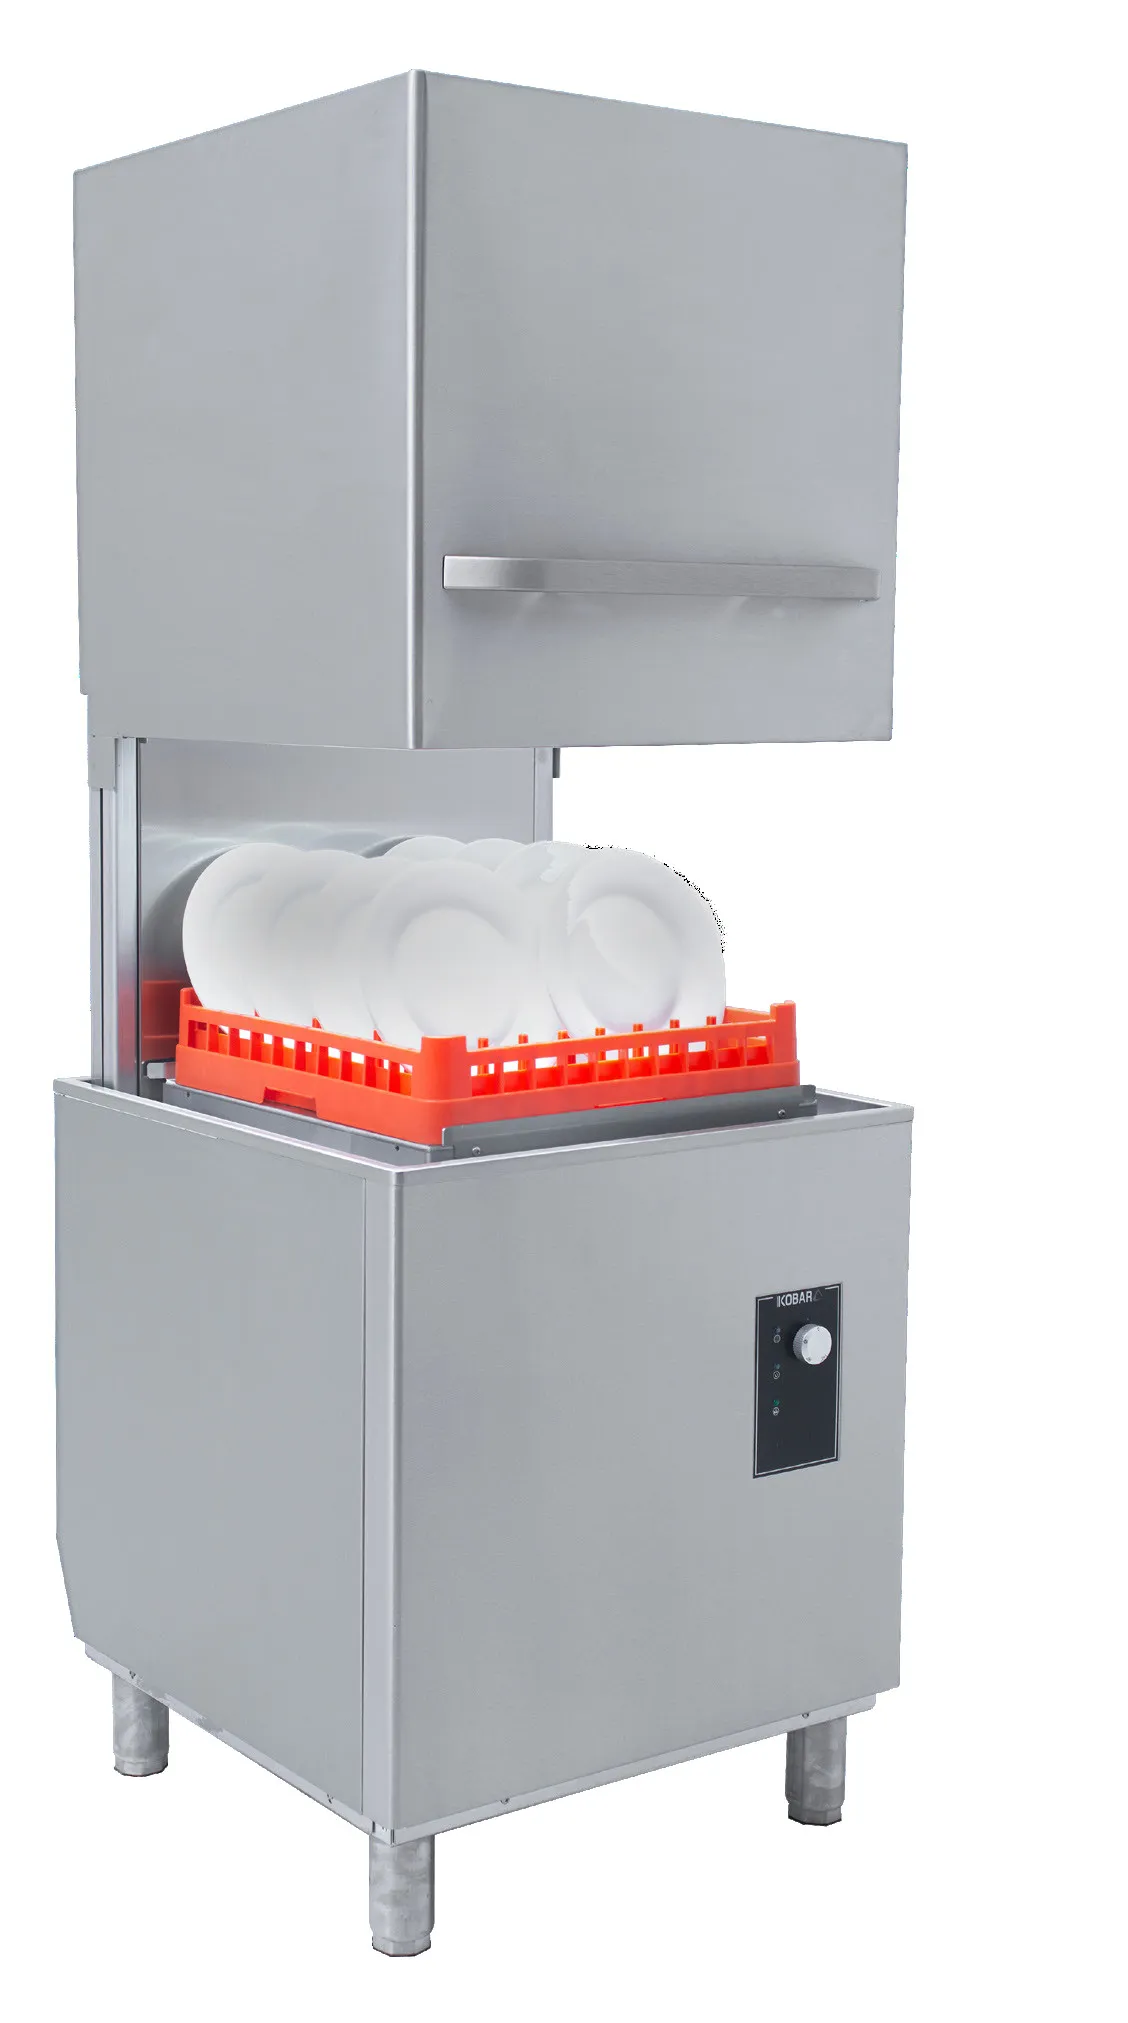 Kobar K1100 Commercial Dishwasher